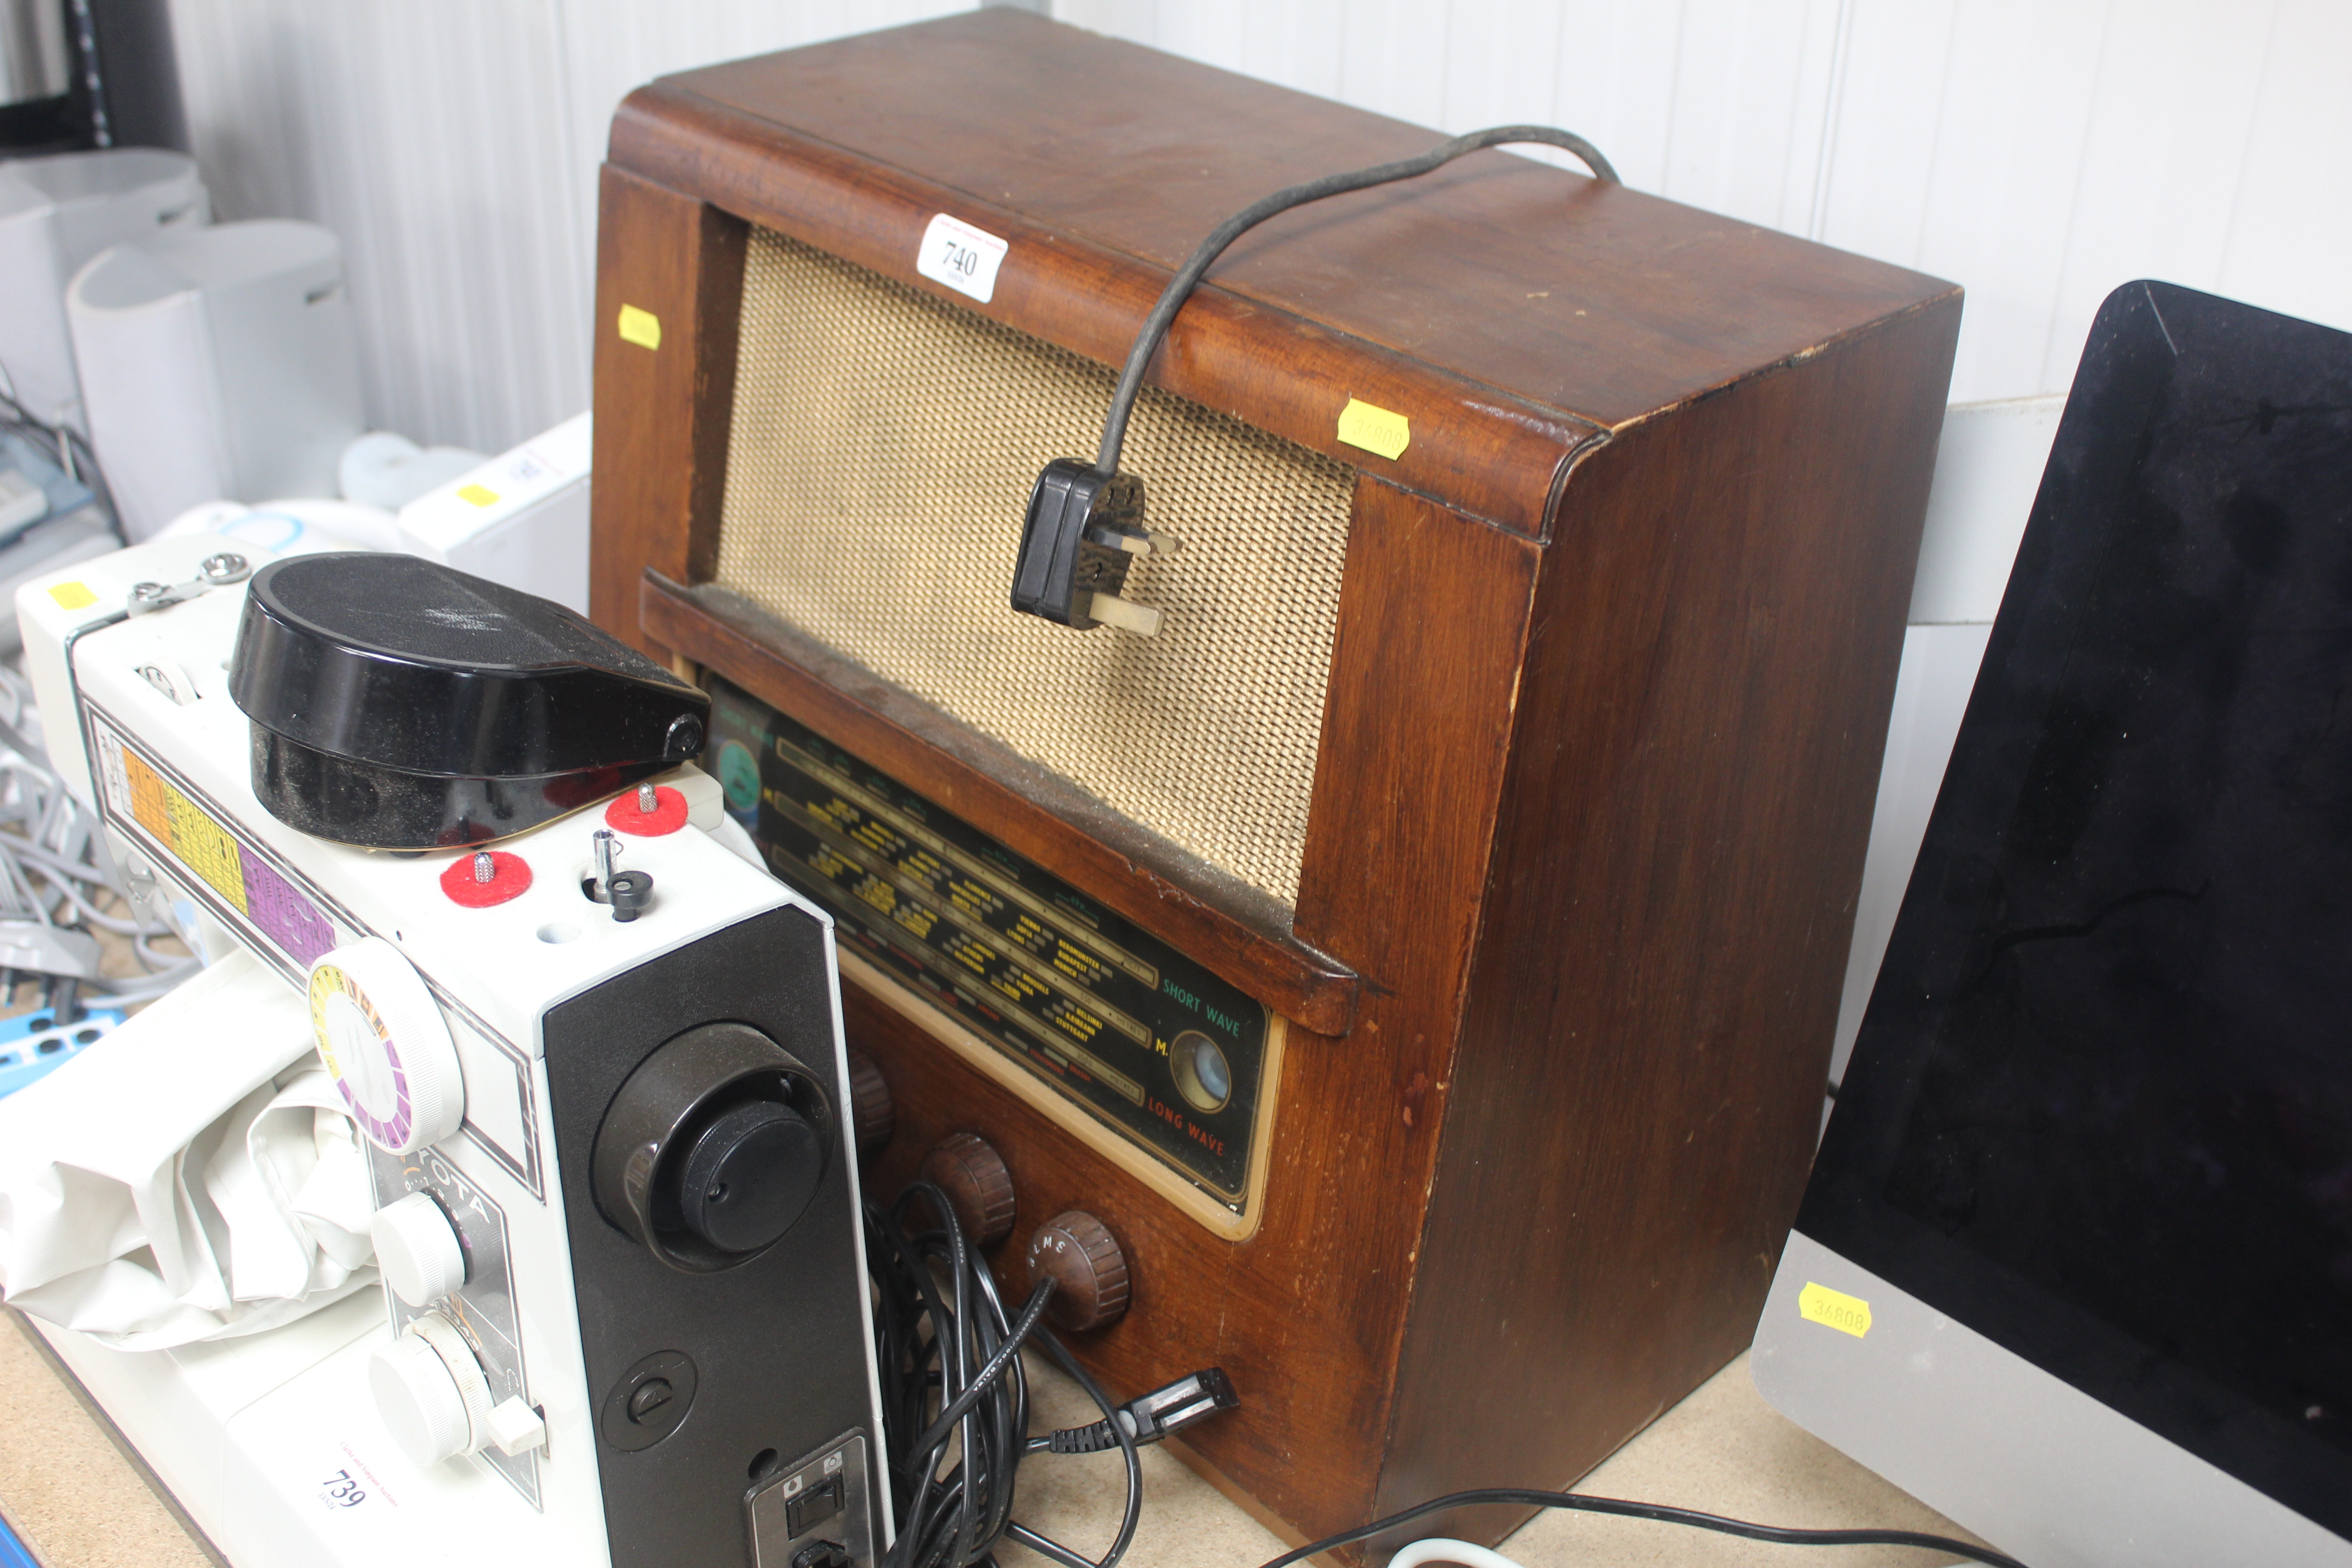 A vintage radio sold as collectors item